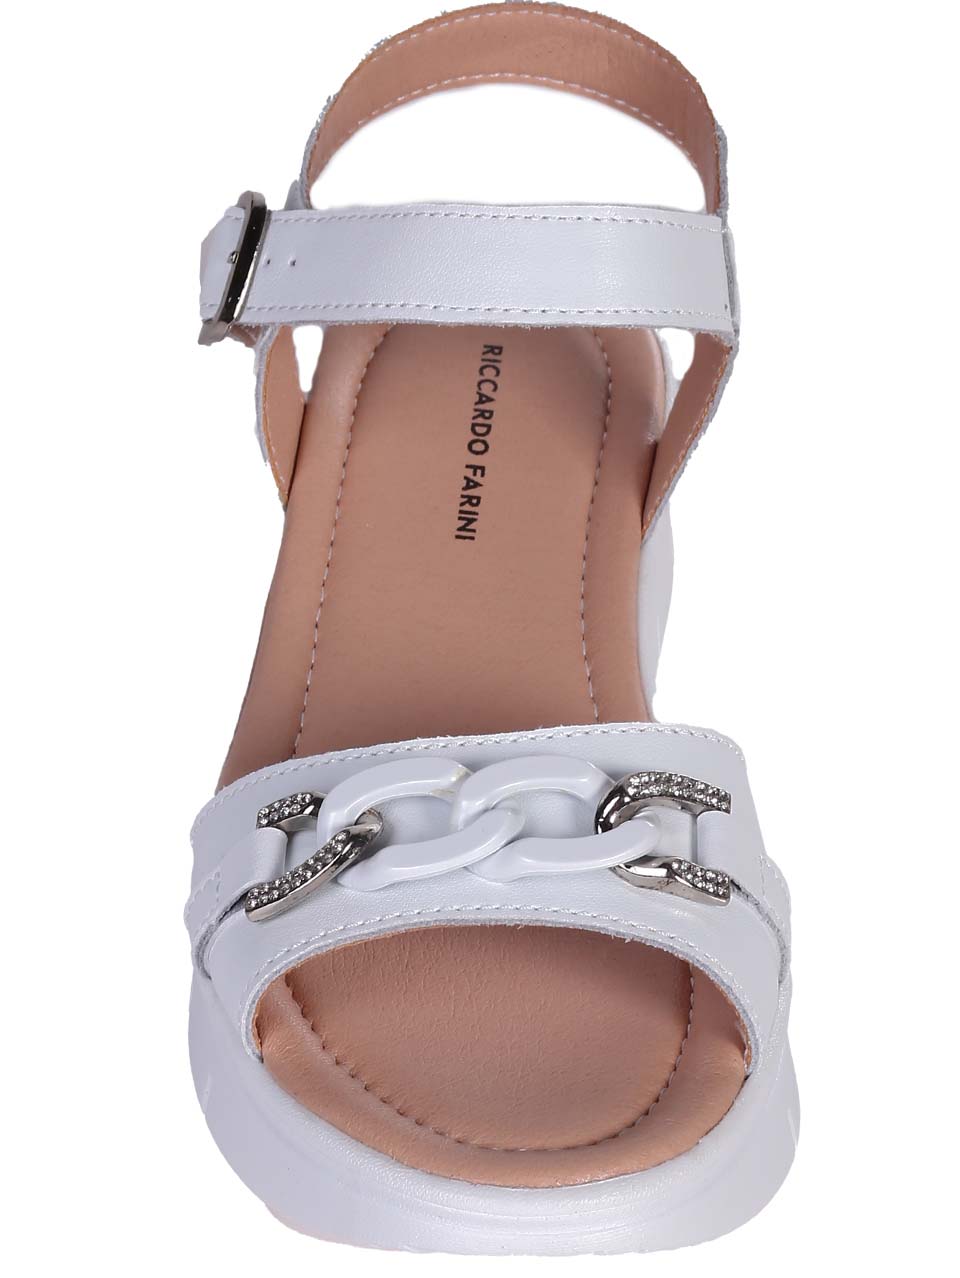 Ежедневни дамски сандали на платформа от естествена кожа в бяло 4AF-24108 white/grigio